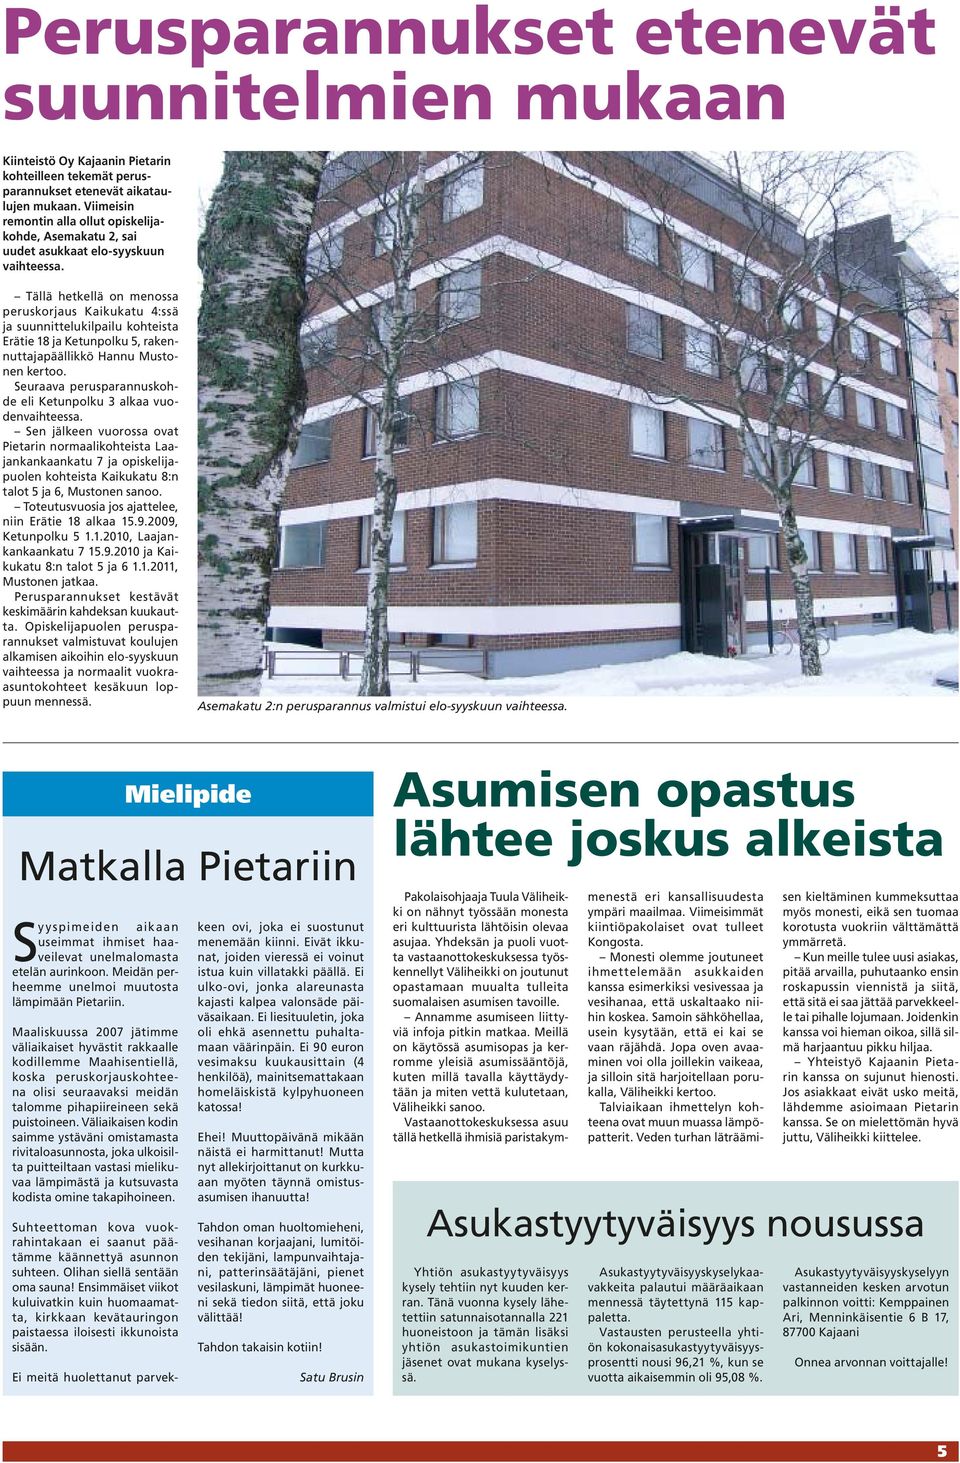 Tällä hetkellä on menossa peruskorjaus Kaikukatu 4:ssä ja suunnittelukilpailu kohteista Erätie 18 ja Ketunpolku 5, rakennuttajapäällikkö Hannu Mustonen kertoo.